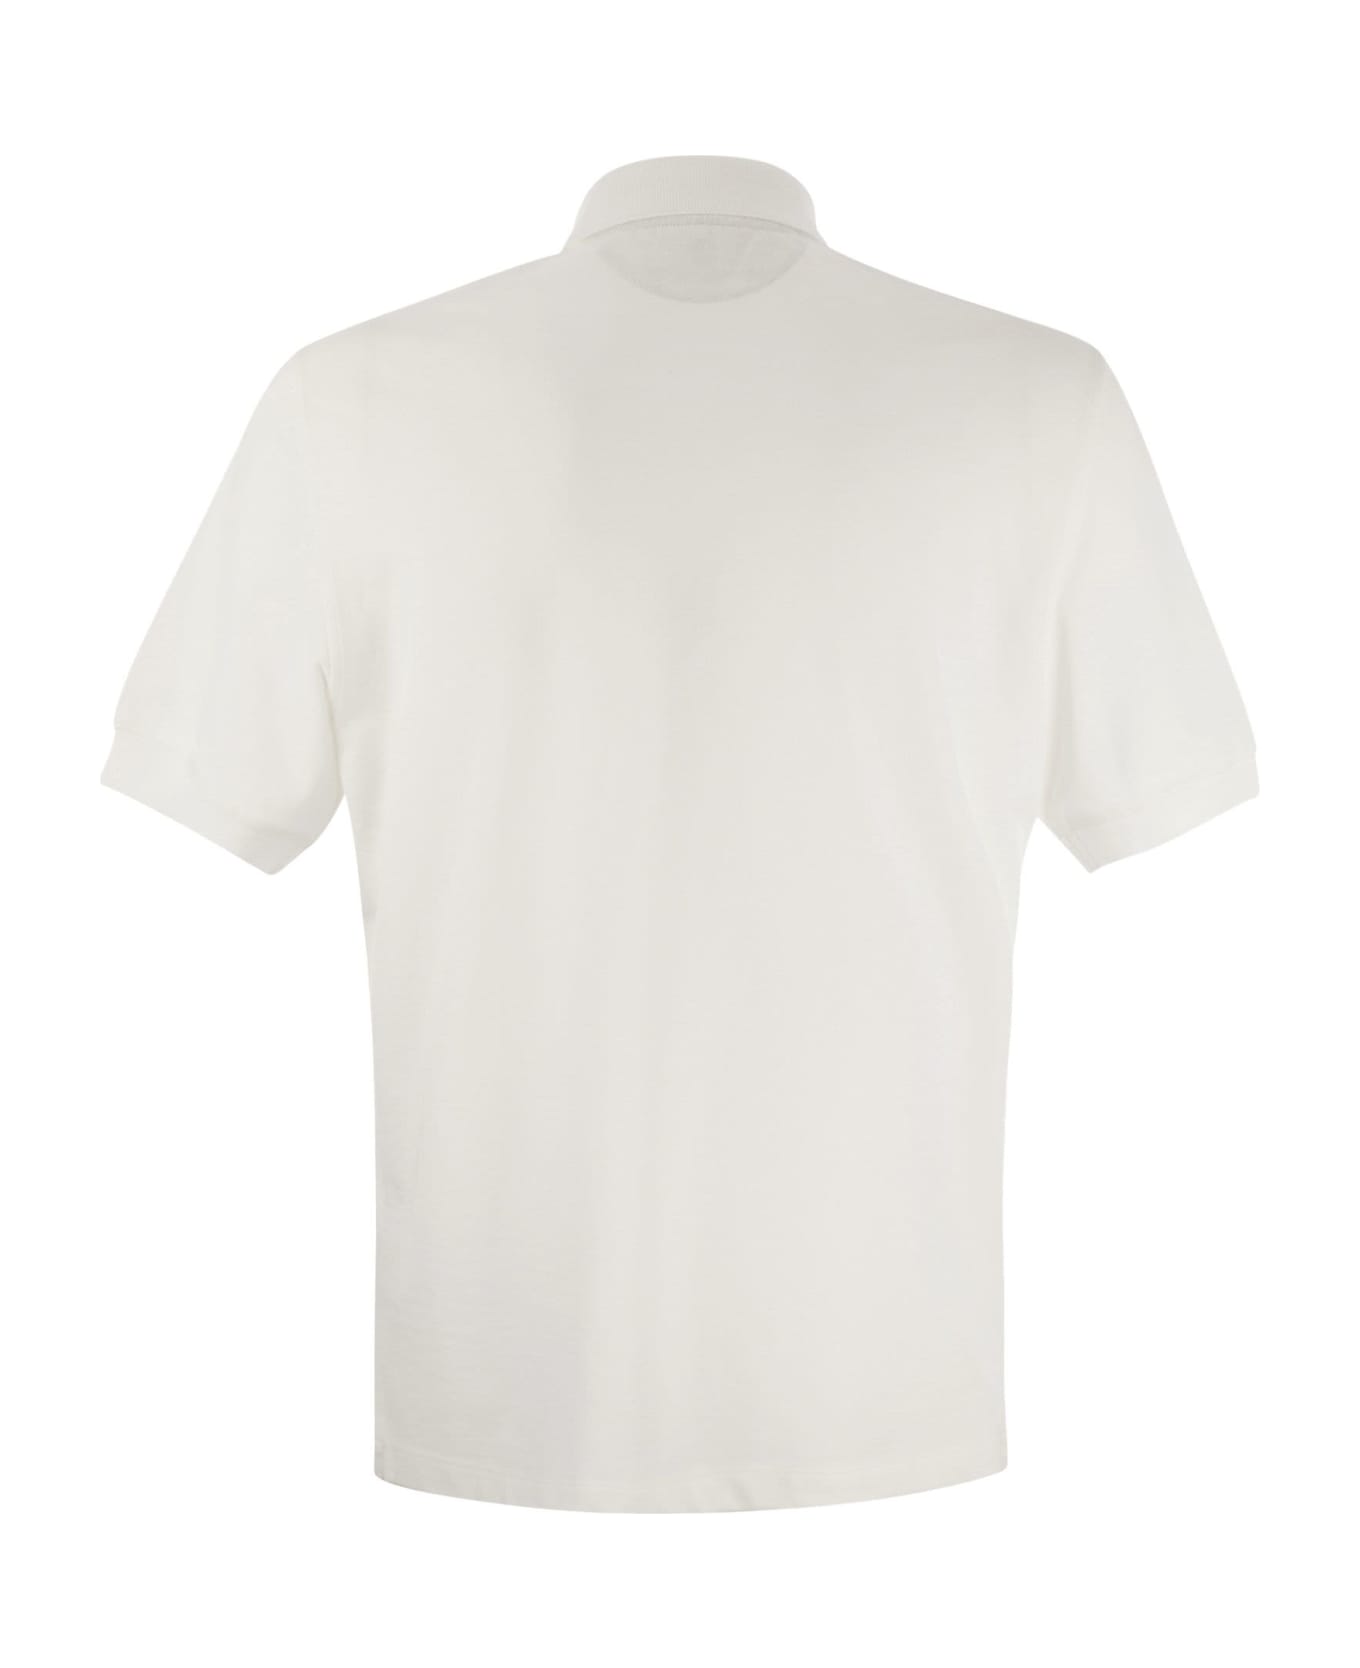 Brunello Cucinelli Cotton Jersey Polo Shirt - White